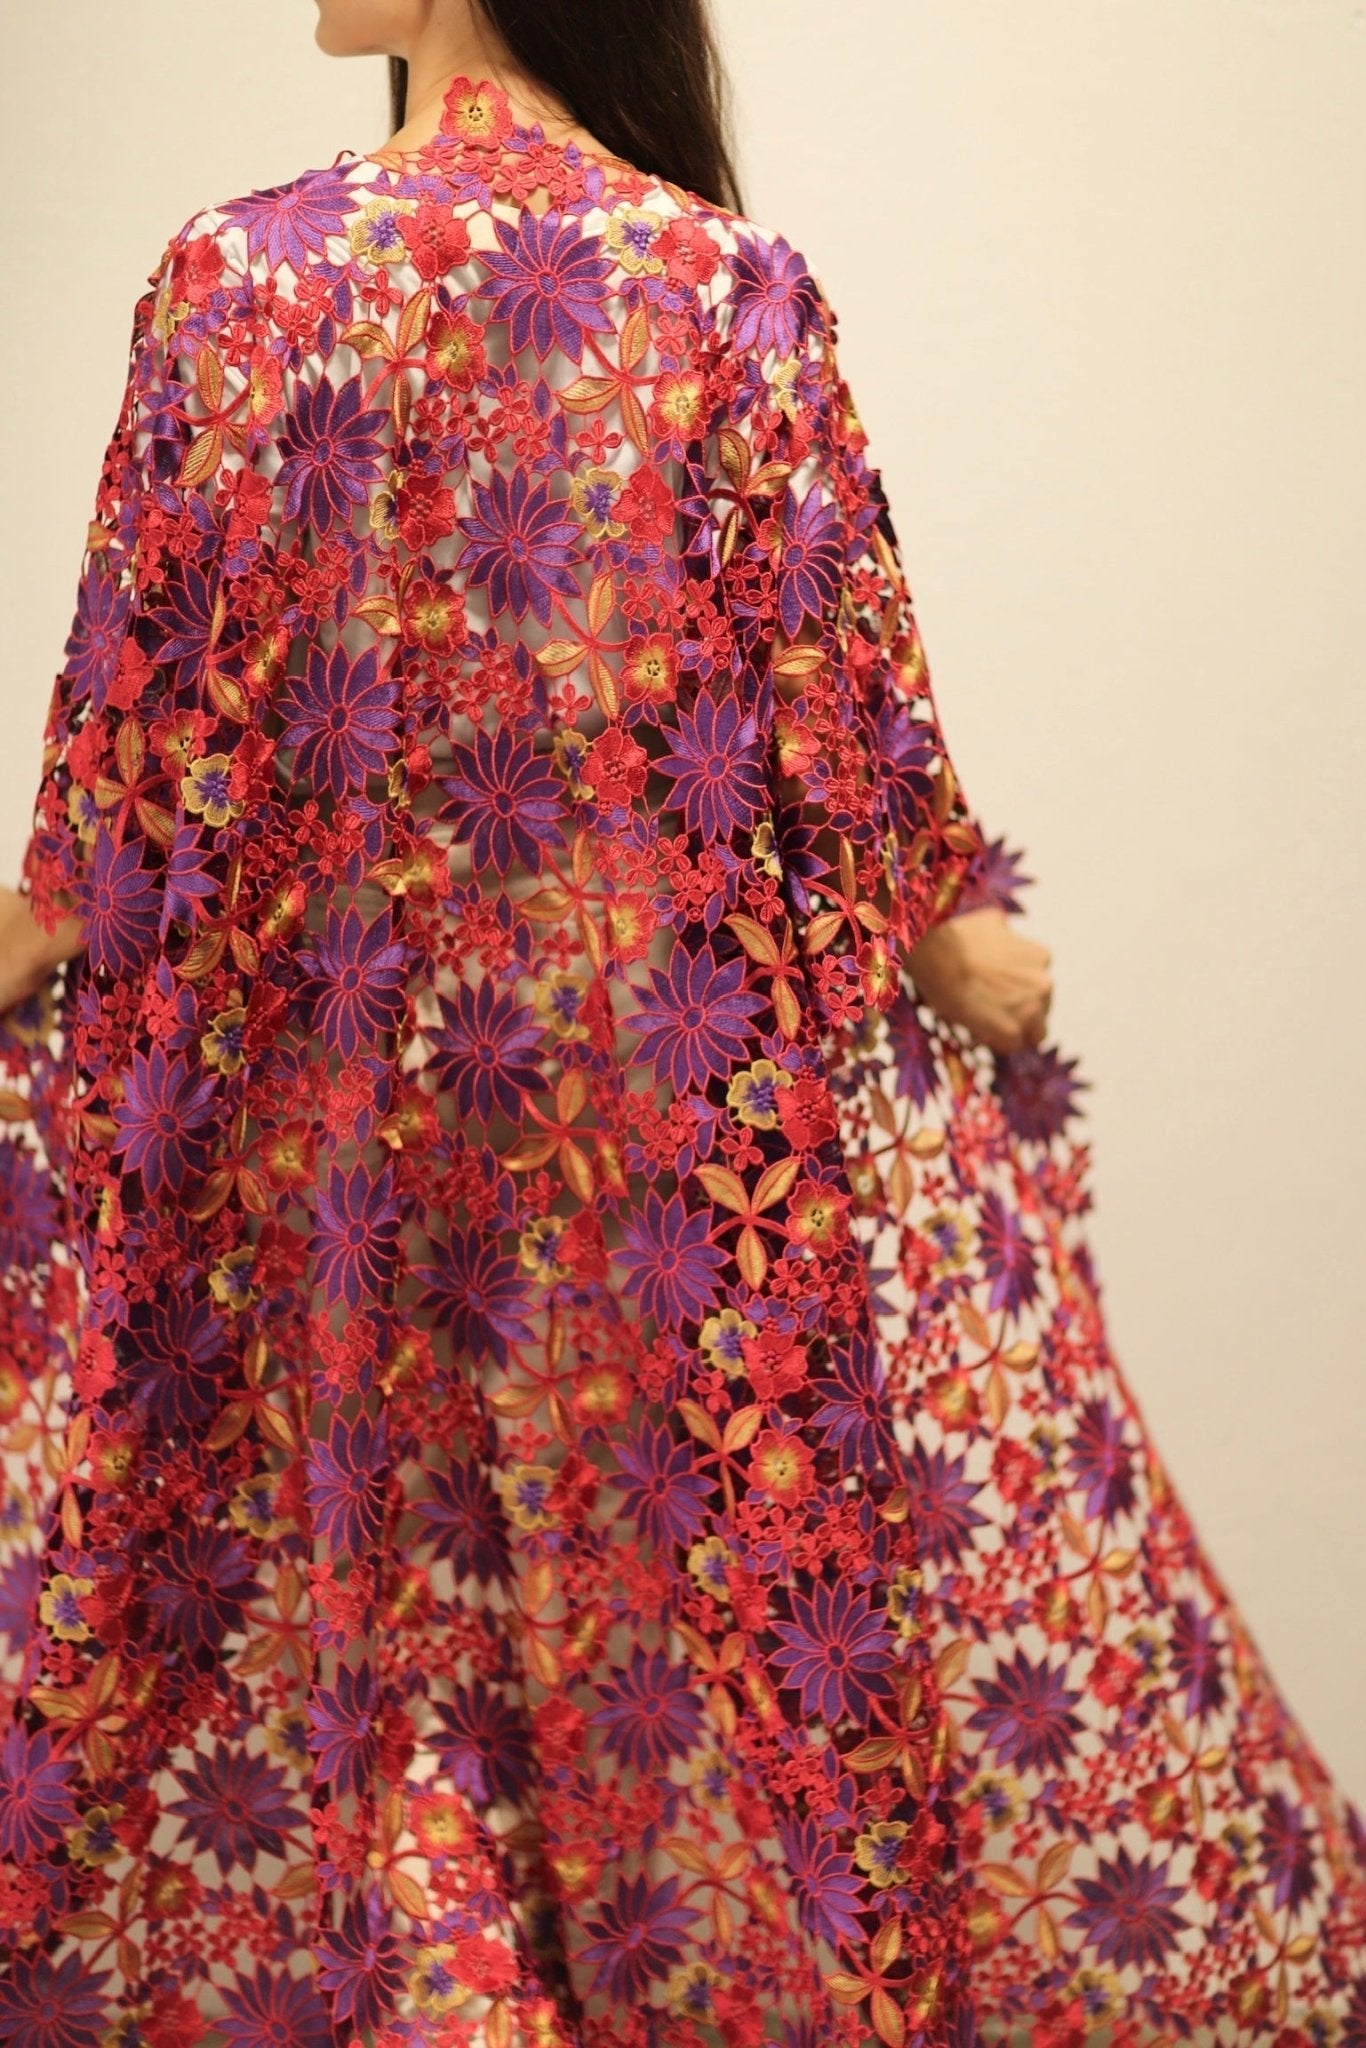 DIONYSUS FLOWER LACE KIMONO - sustainably made MOMO NEW YORK sustainable clothing, Embroidered Kimono slow fashion